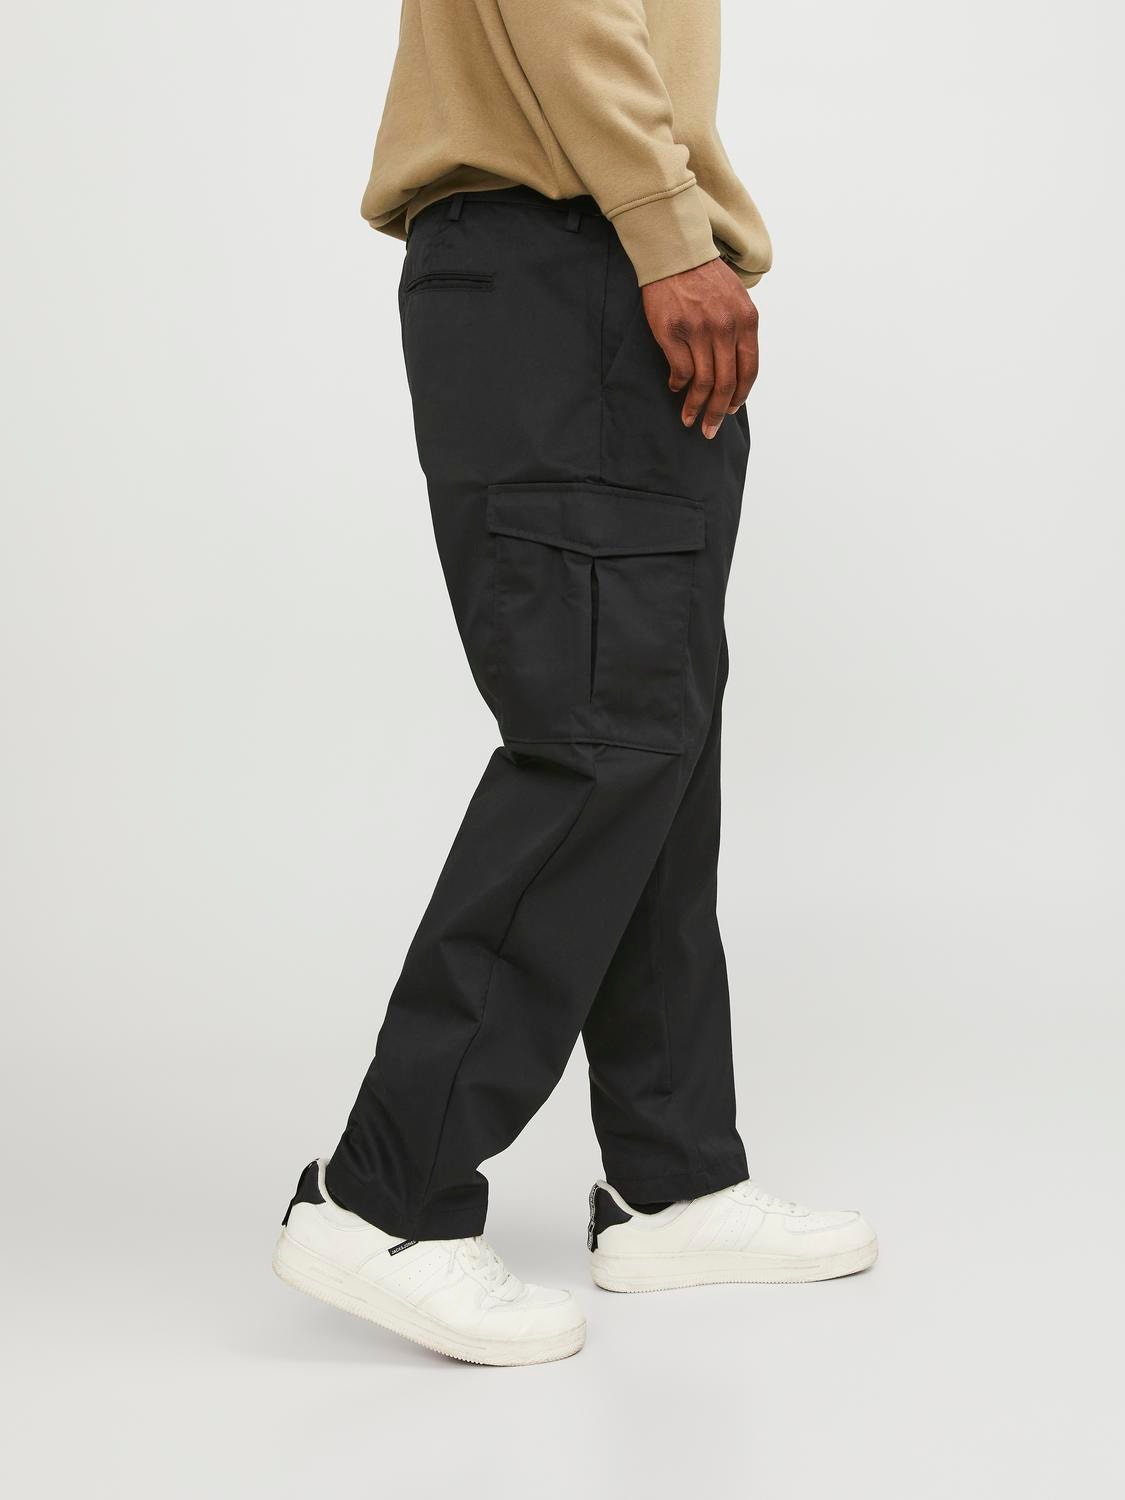 Plus Size Black Pants Pockets  Plus Size Black Cargo Pants